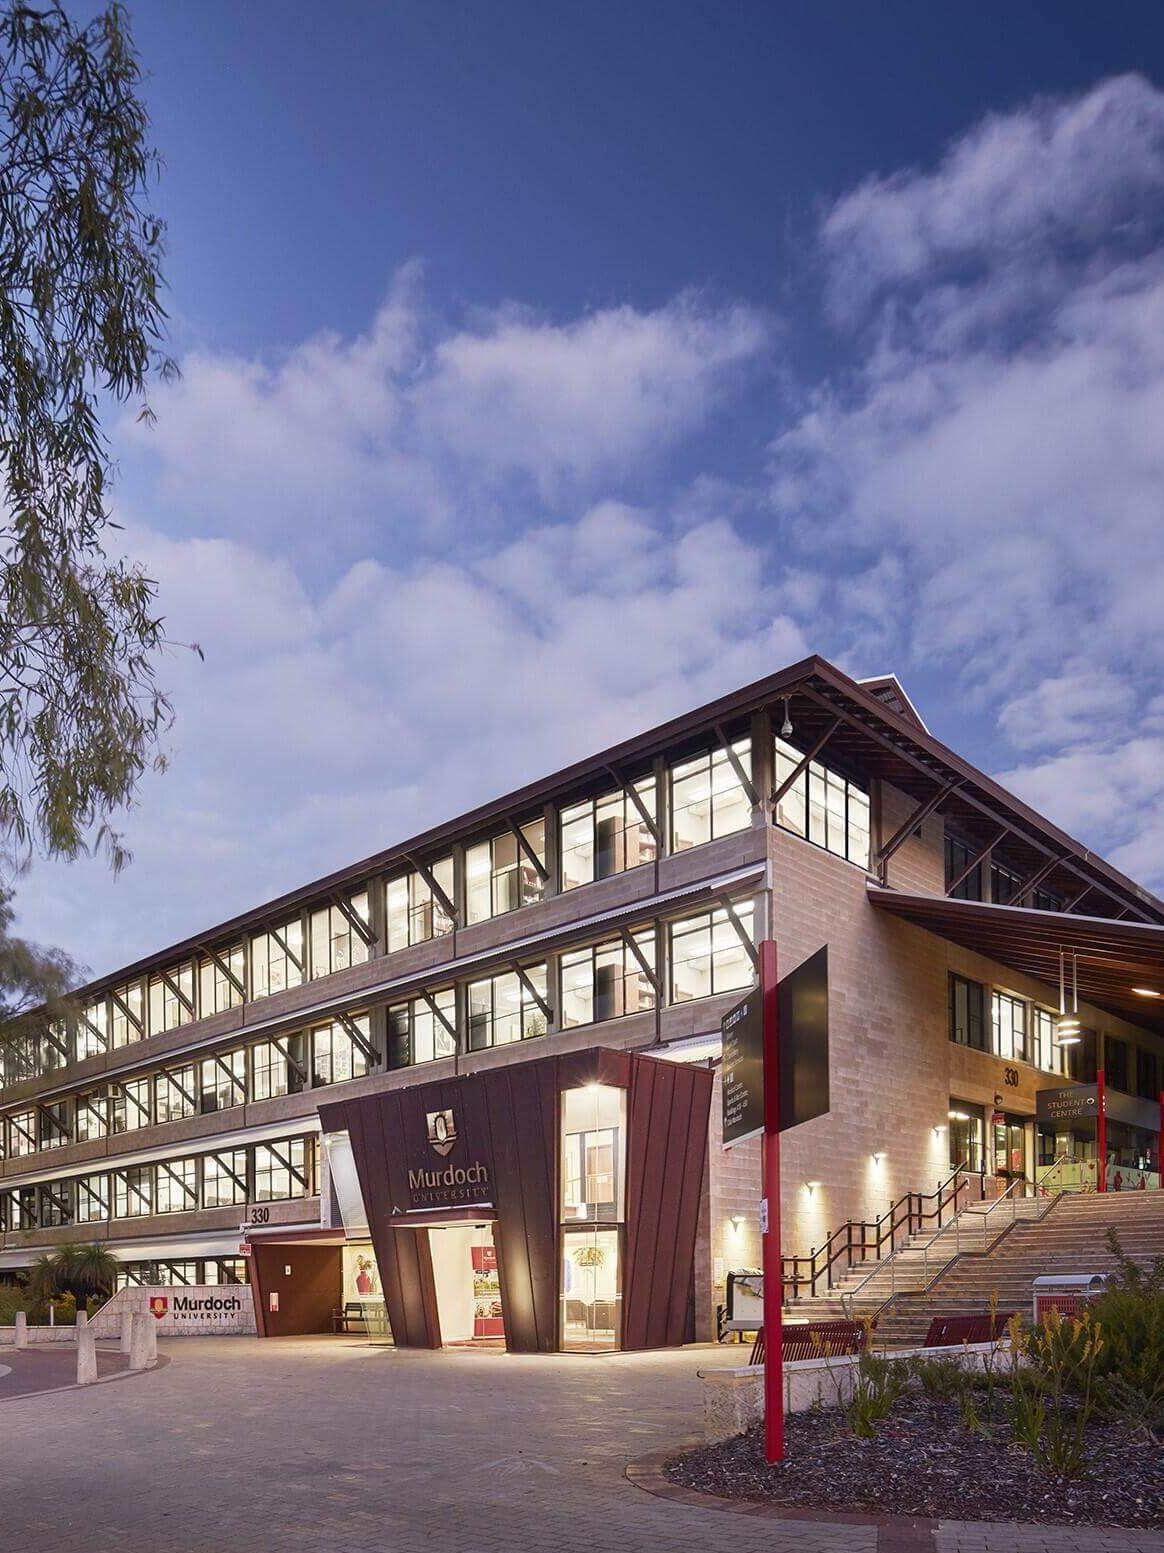 Murdoch University in Perth in Western Australia